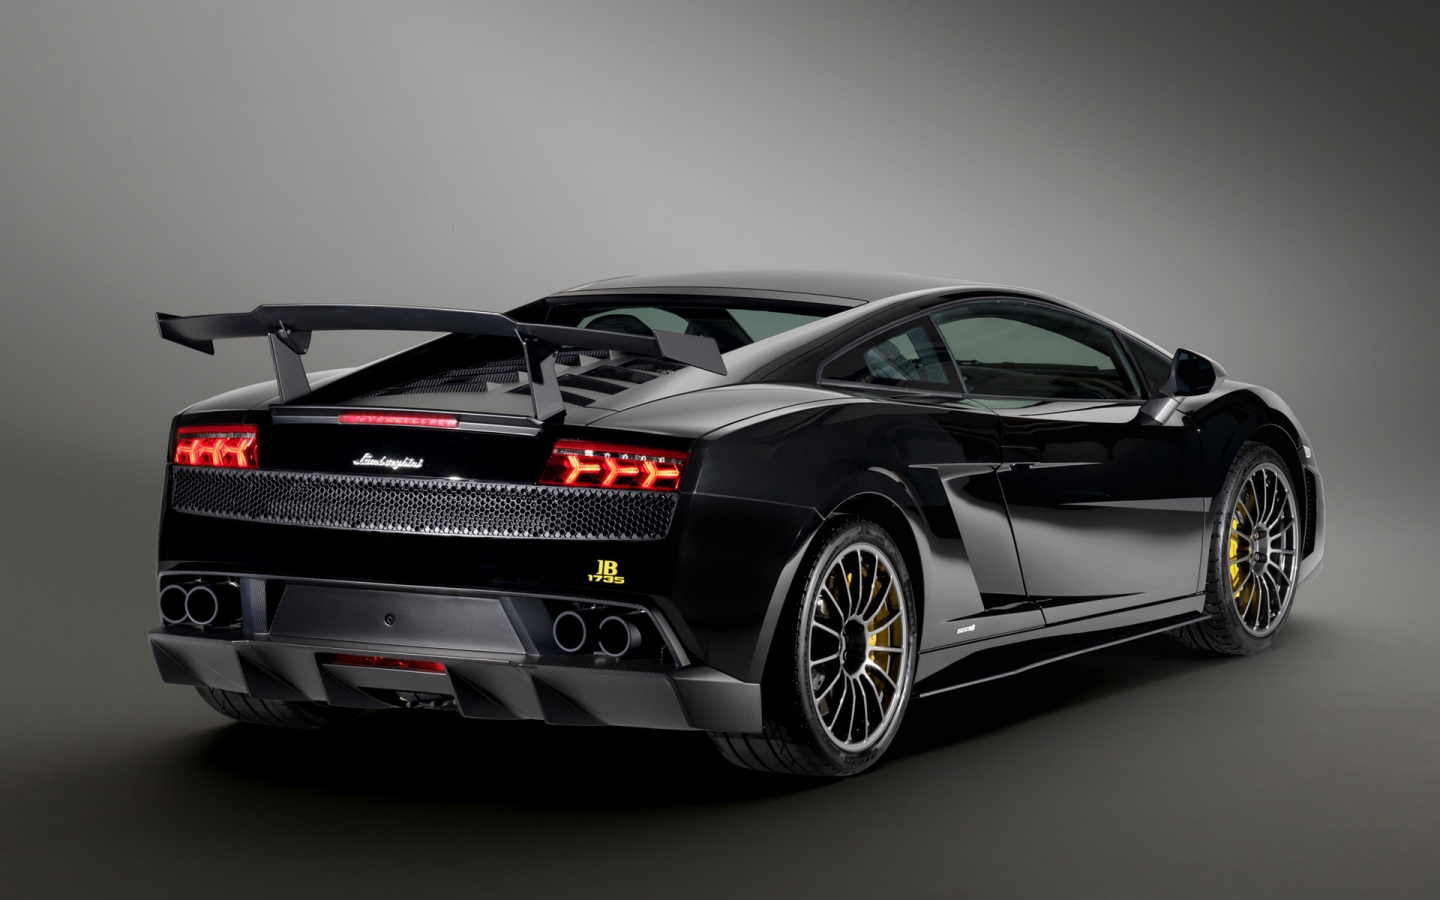 Lamborghini Gallardo LP570 2011 for 1440 x 900 widescreen resolution